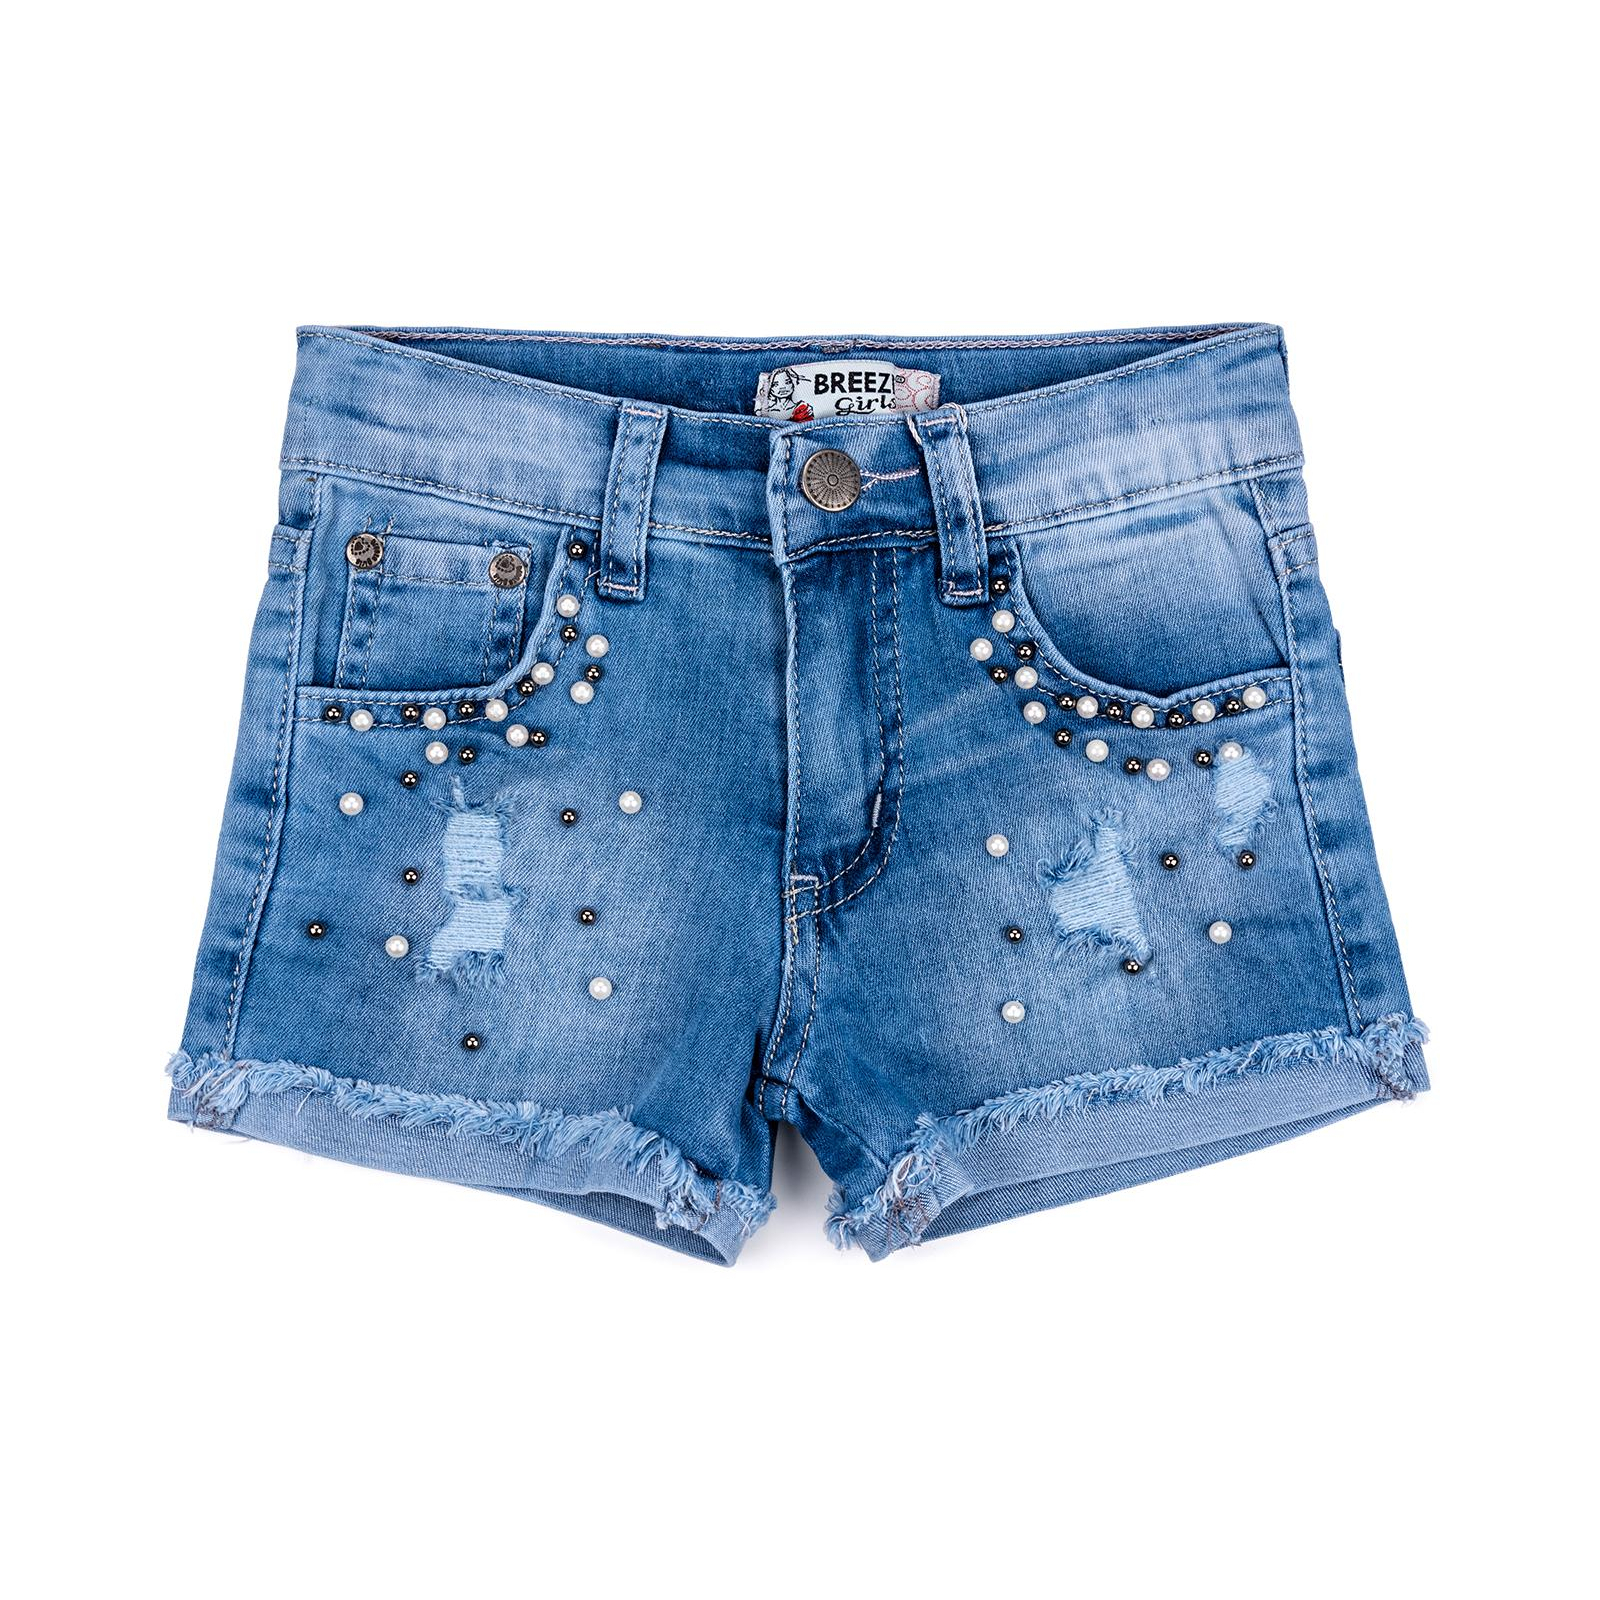 Шорты Breeze джинсовые с бусинами (20139-134G-blue)